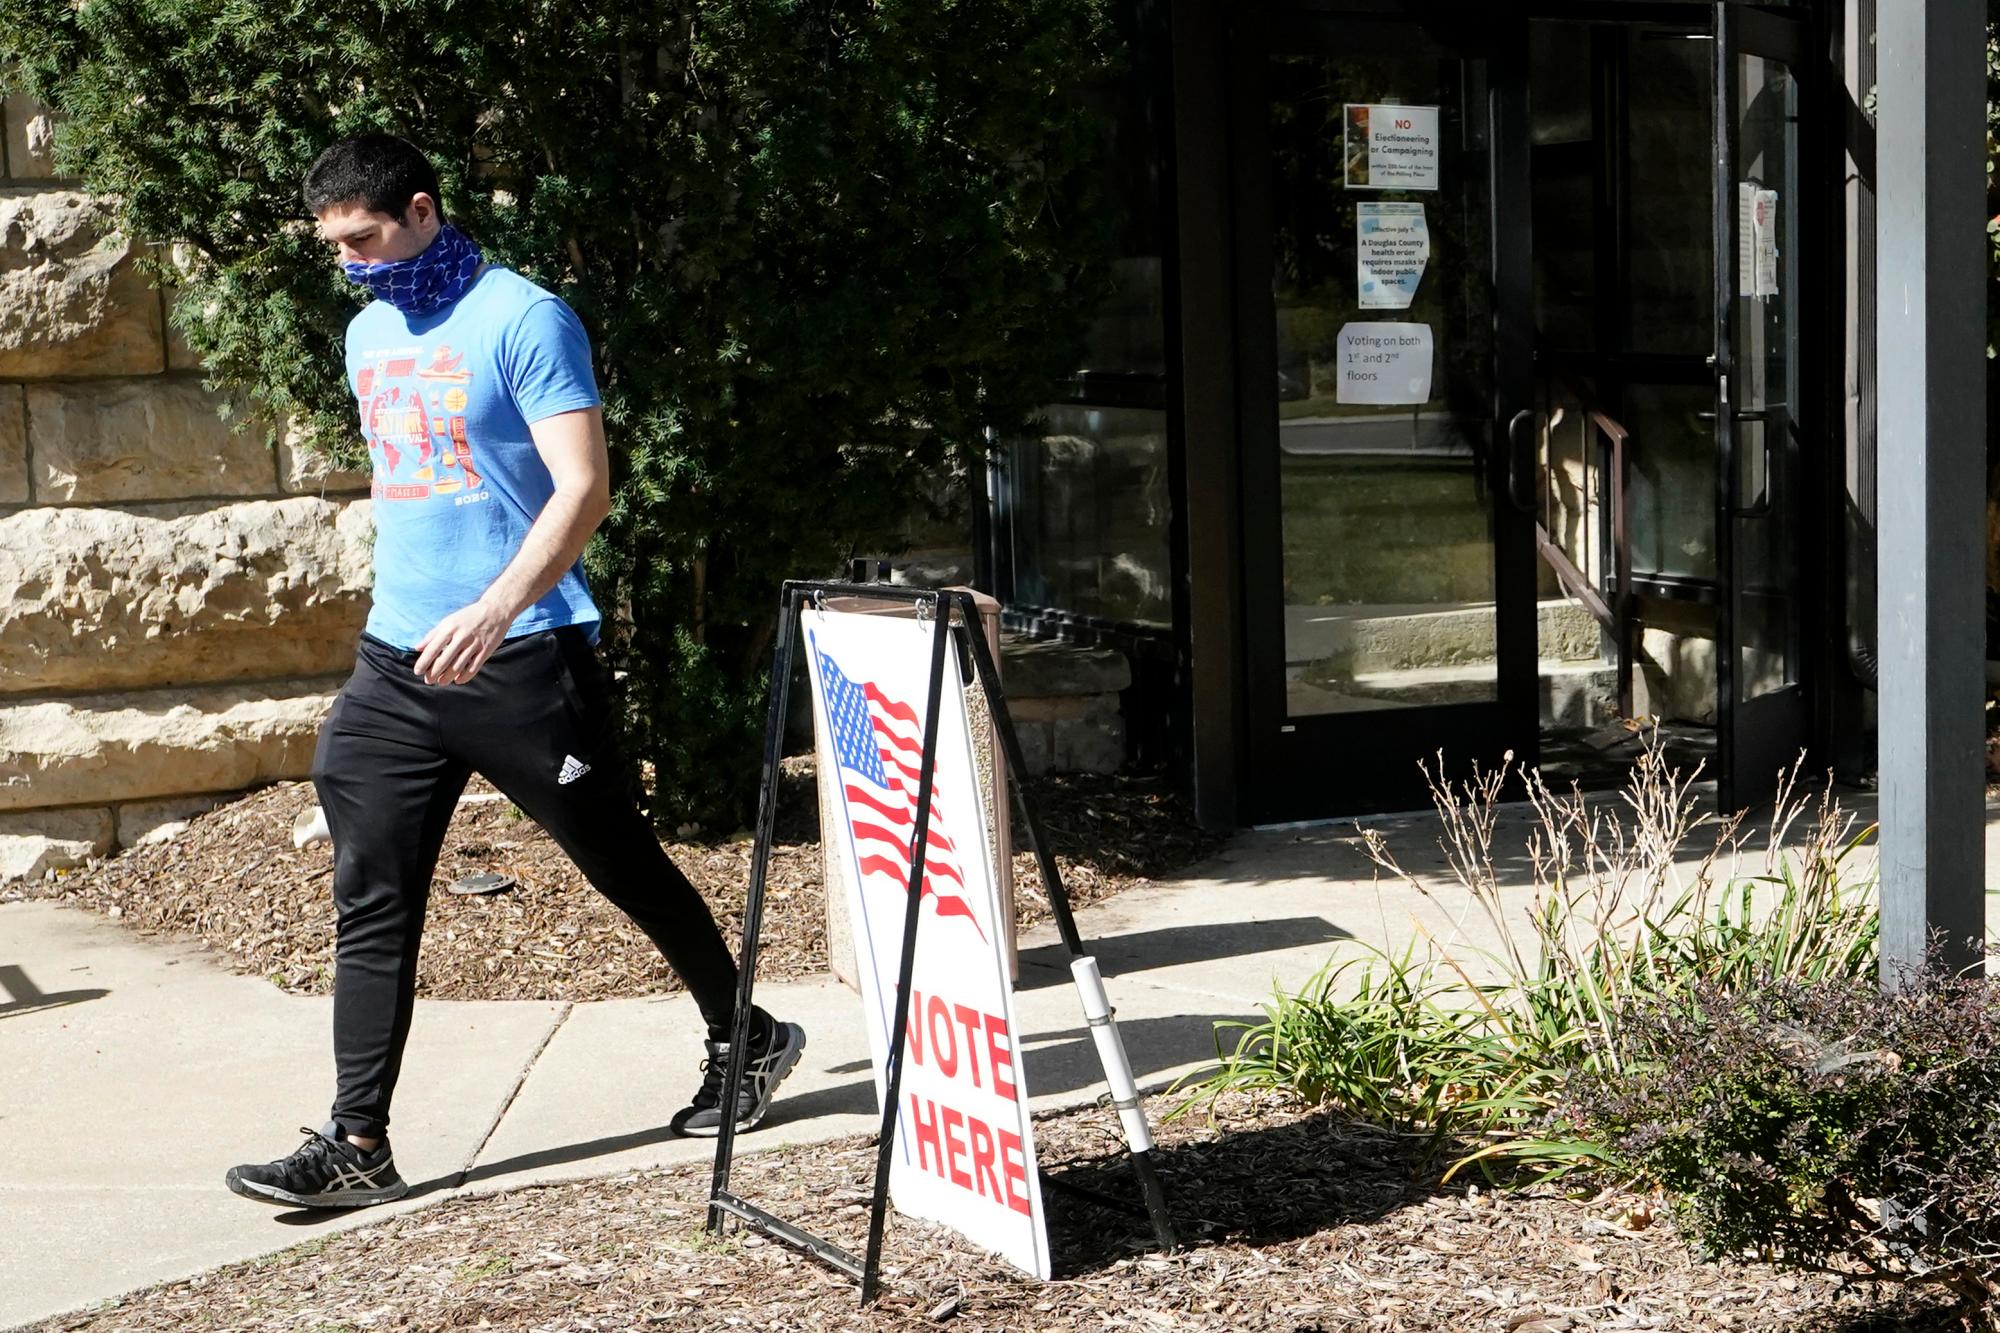 ESTADOS UNIDOS: Un votante abandona el Palacio de Justicia del Condado de Douglas después de emitir su voto en Lawrence, Kansas, el miércoles 14 de octubre de 2020. La votación en persona comenzó hoy en la mayoría de los condados de Kansas.